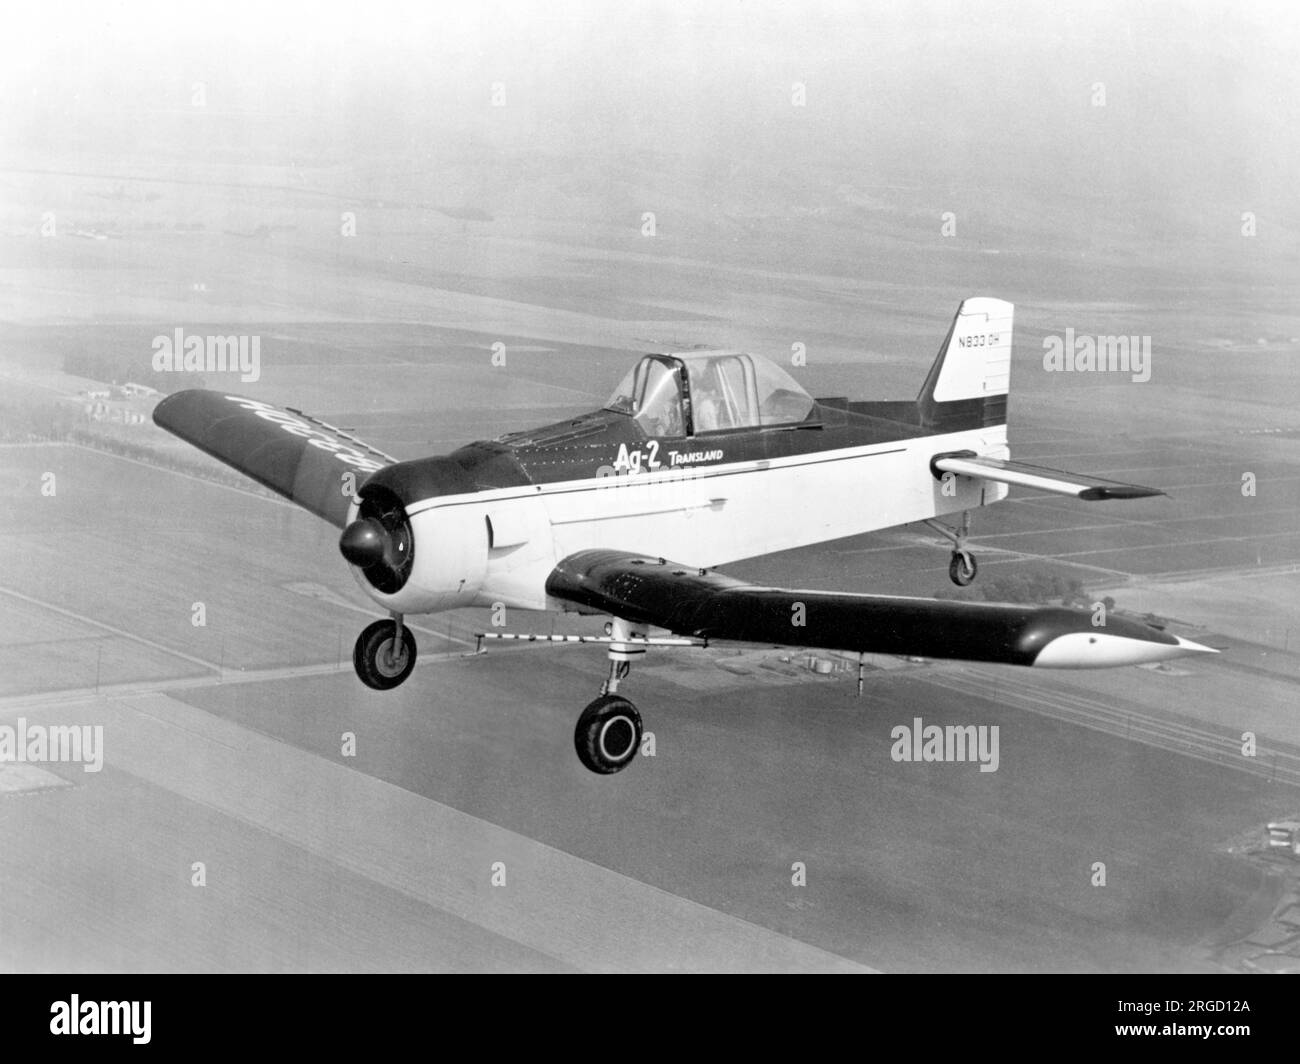 Transland AG-2 N8330H, der erste Prototyp im Flug. Einige Jahre nach dem Zweiten Weltkrieg wandelte die Transland Aircraft Company aus Torrance, Kalifornien, ein Geschäftsbereich der Hi Shear Nivet Tool Co überschüssige Flugzeuge aus dem Zweiten Weltkrieg, insbesondere Trainer, für die Aufgabe des Abstaubens um. Nach dem Zweiten Weltkrieg lernte Frederick E. Weick an der Texas A and M University und entwarf einen einmotorigen Sprühflugzeug als Klassenprojekt. Im Jahr 1950 entwarf er in Zusammenarbeit mit dem College das Ercoupe sowie den AG-1, der in Texas als Piper Pawnee gebaut wurde. Der Prototyp AG-2 (N833 Stockfoto